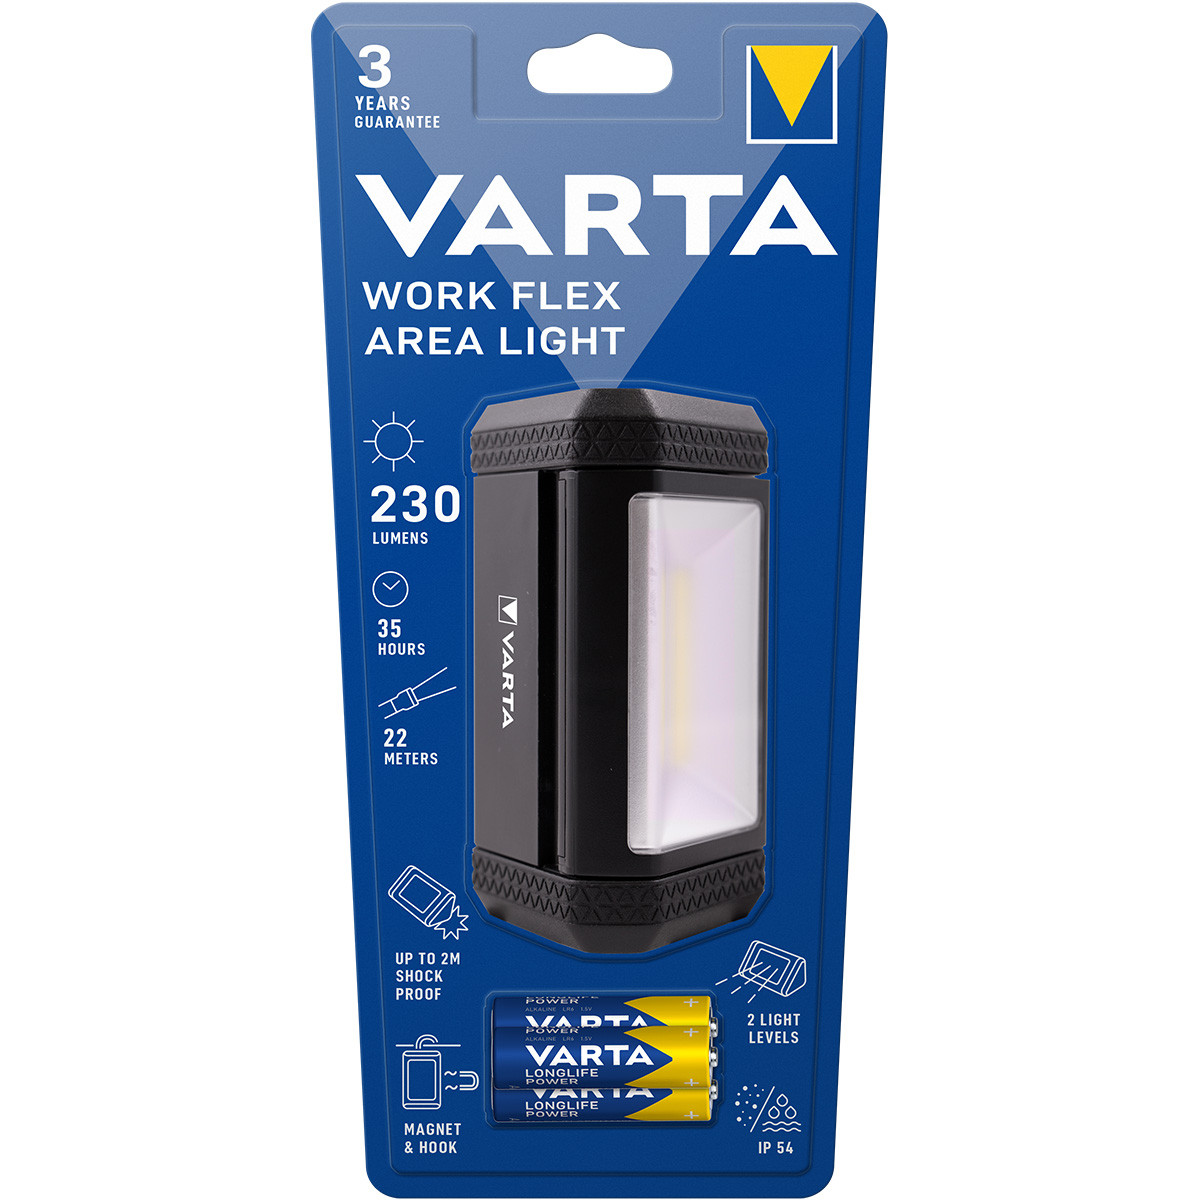 Projecteurs - Work Flex Area Light - Varta